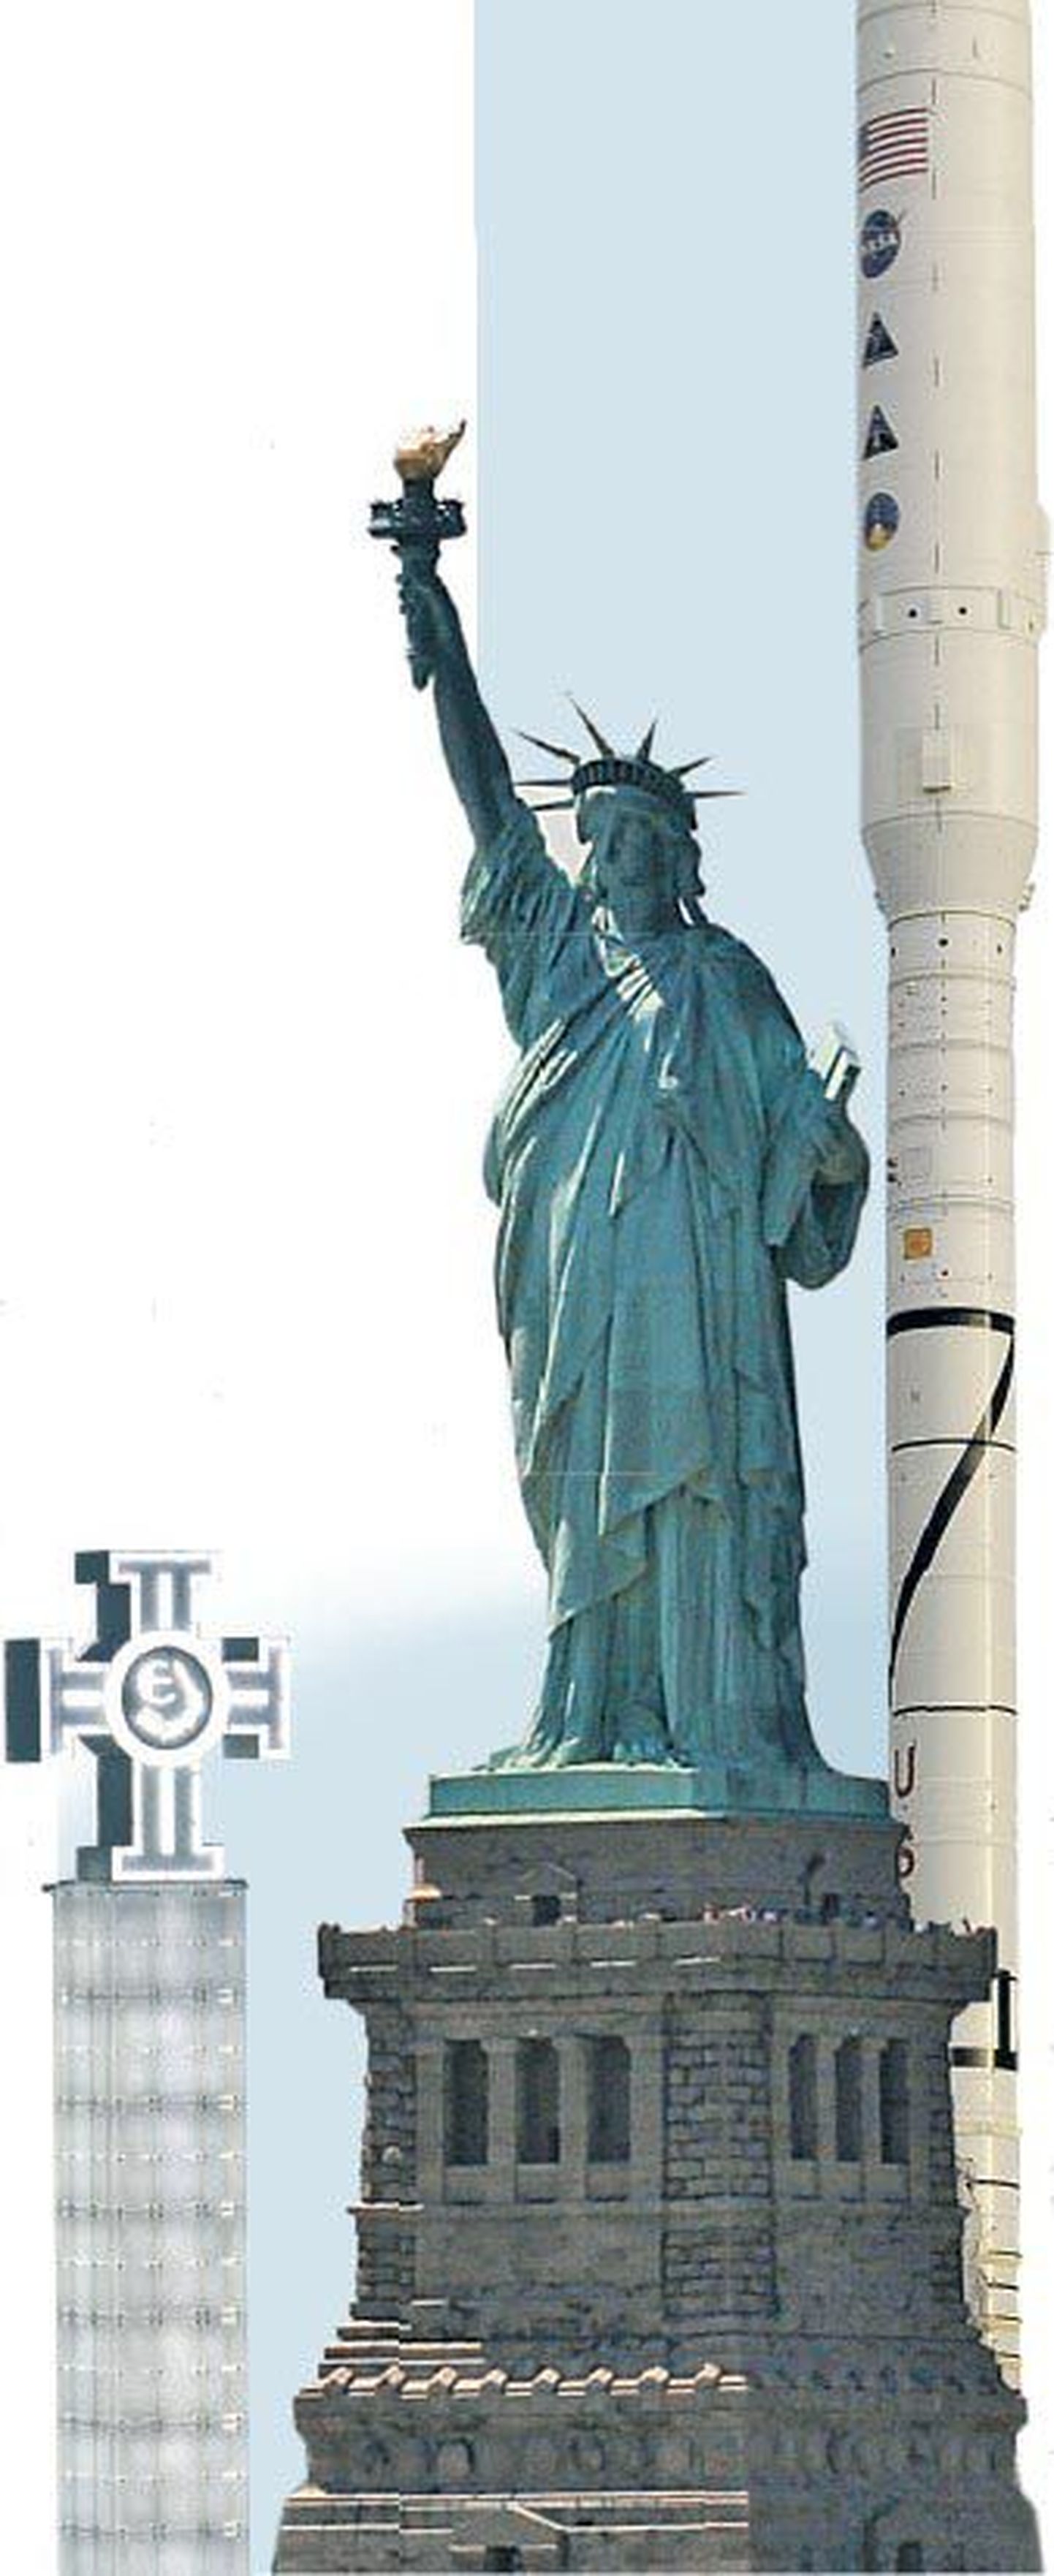 Статуя Свободы в Нью-Йорке.